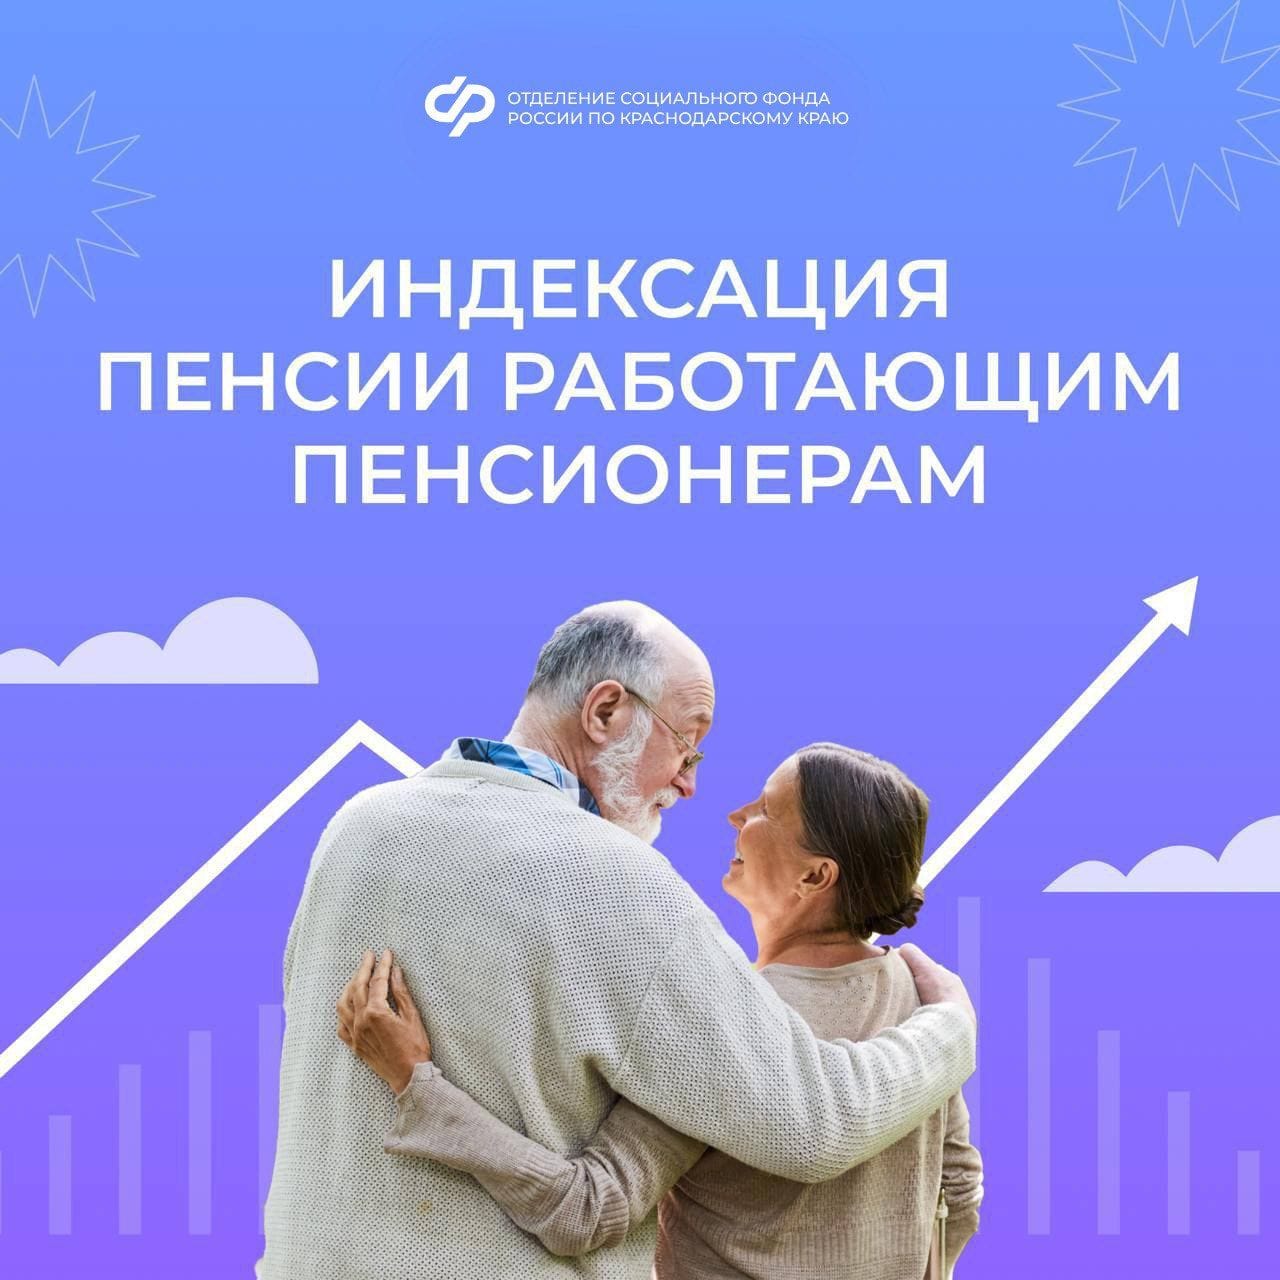 Индексация пенсии работающим пенсионерам